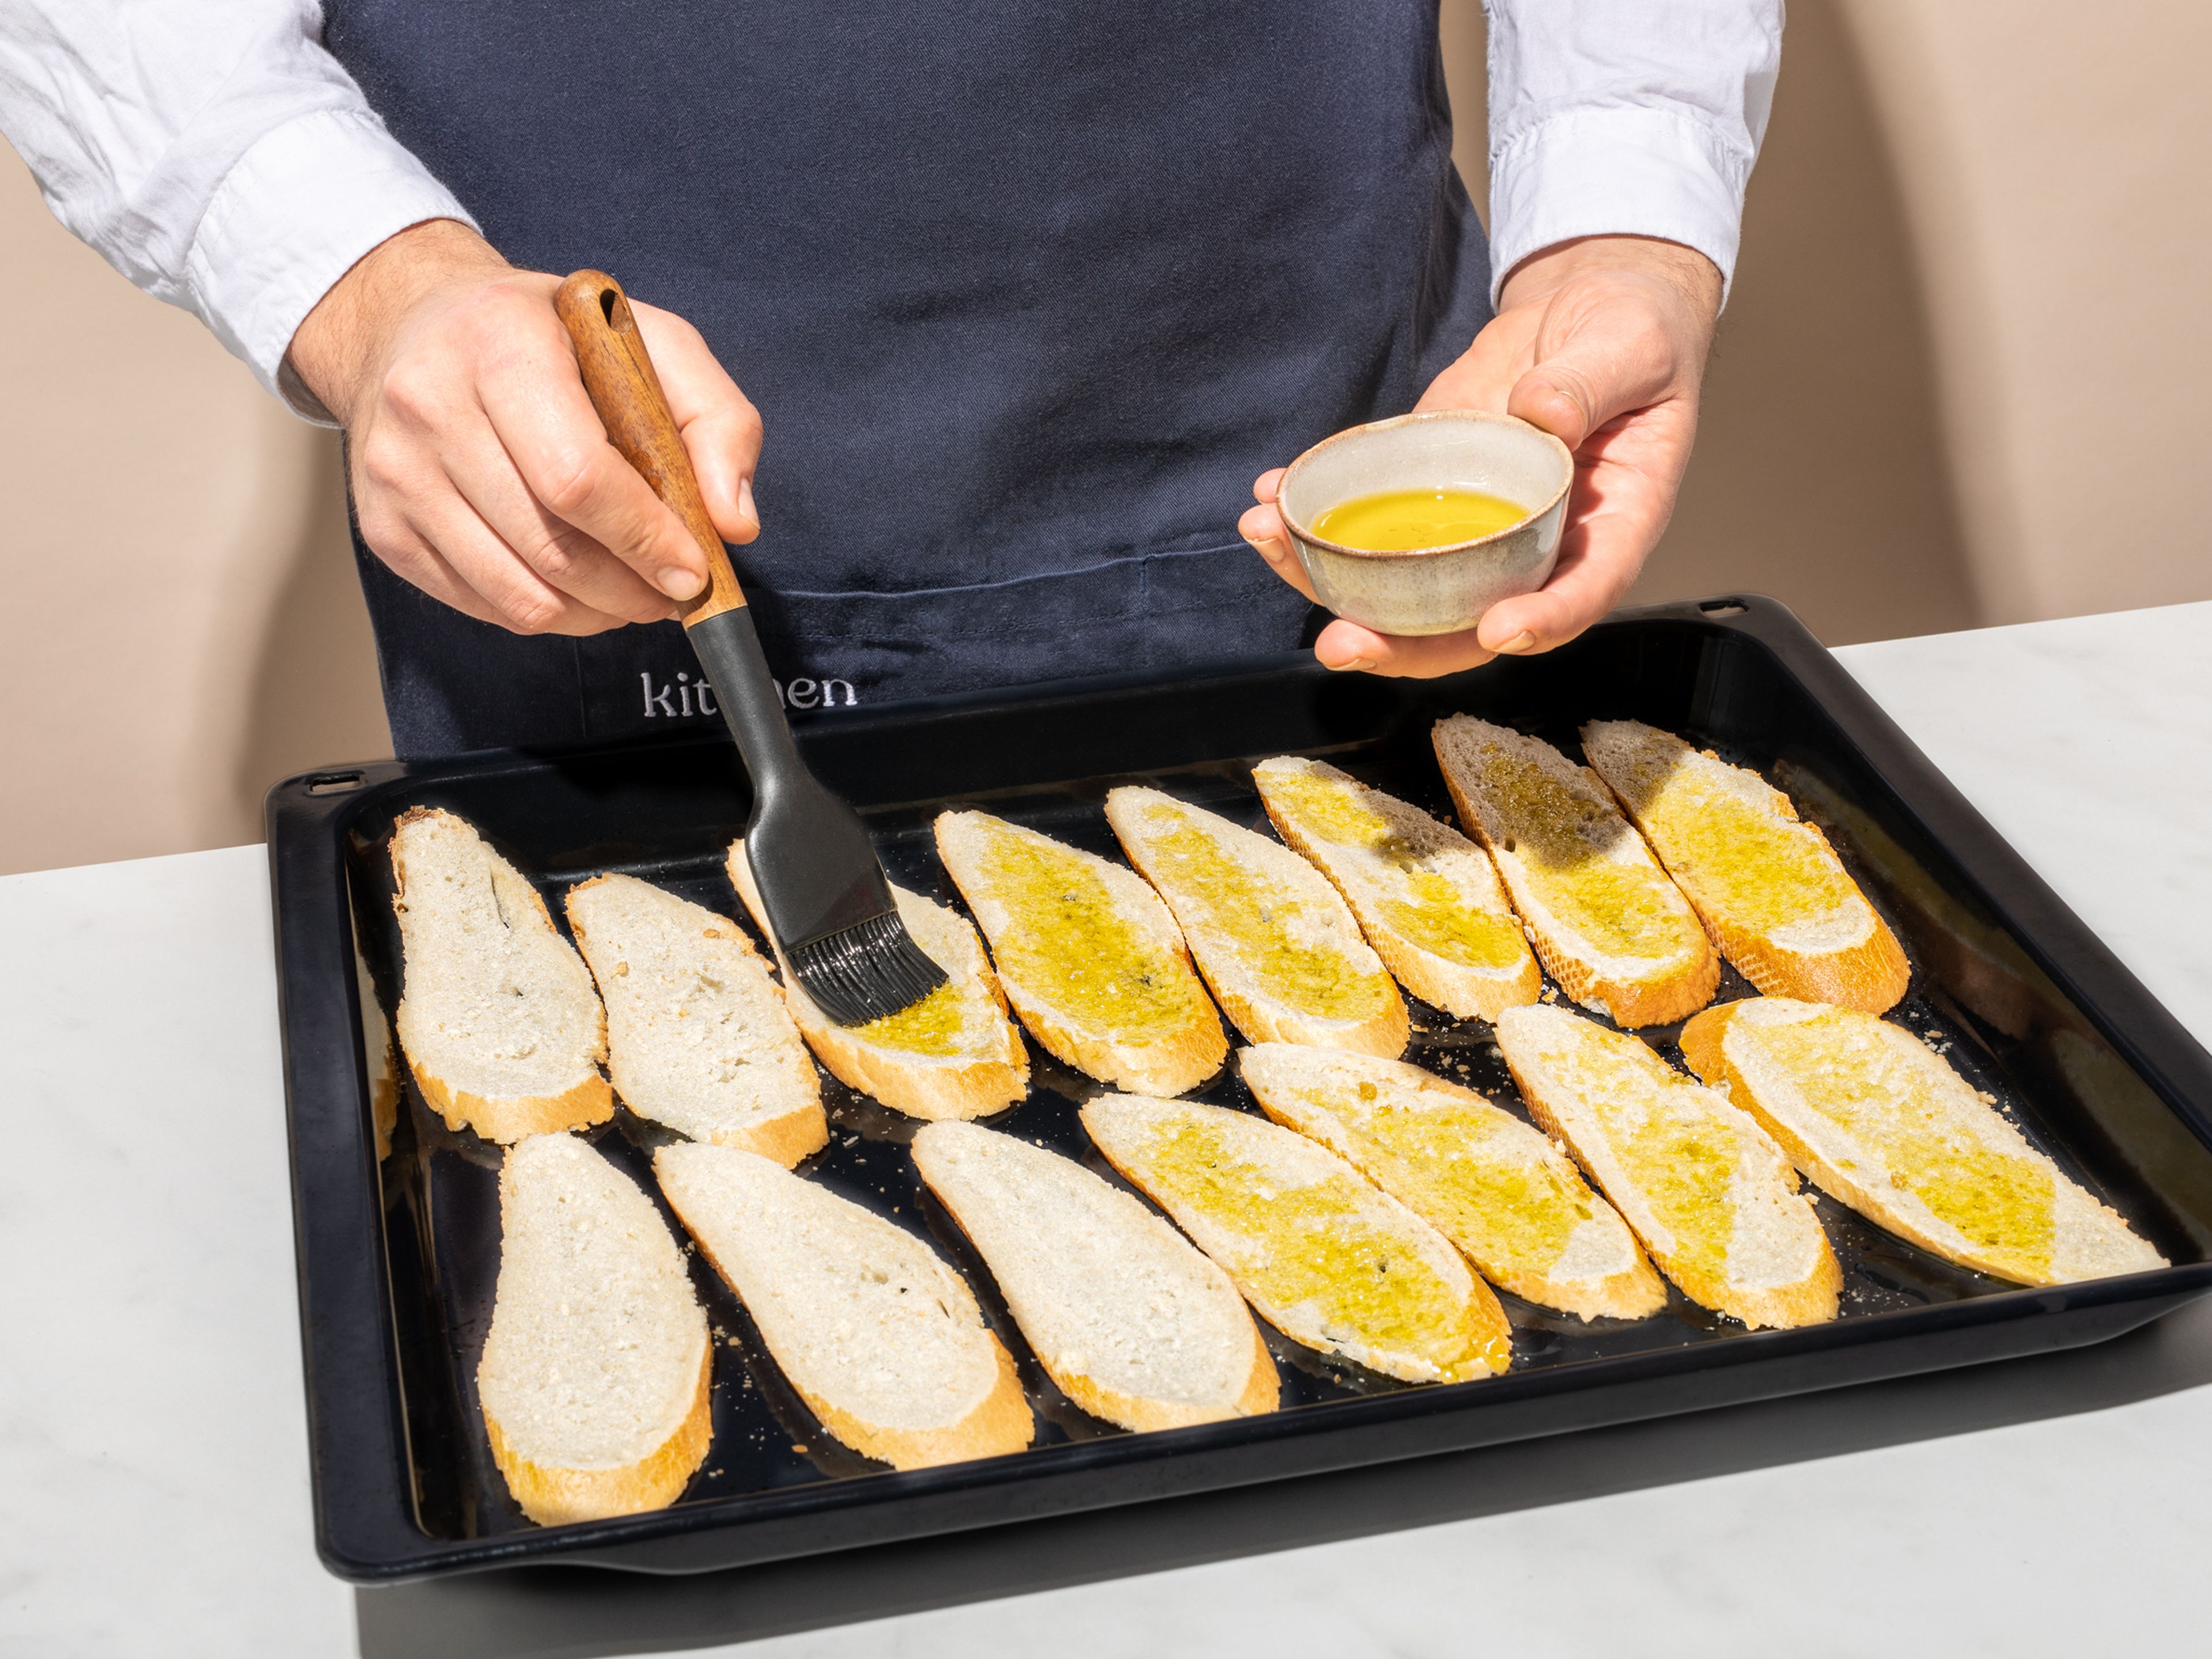 Das Baguette in Scheiben schneiden, mit etwas Olivenöl bestreichen und bei 180 Grad im Ofen für etwa 5 Min. backen.